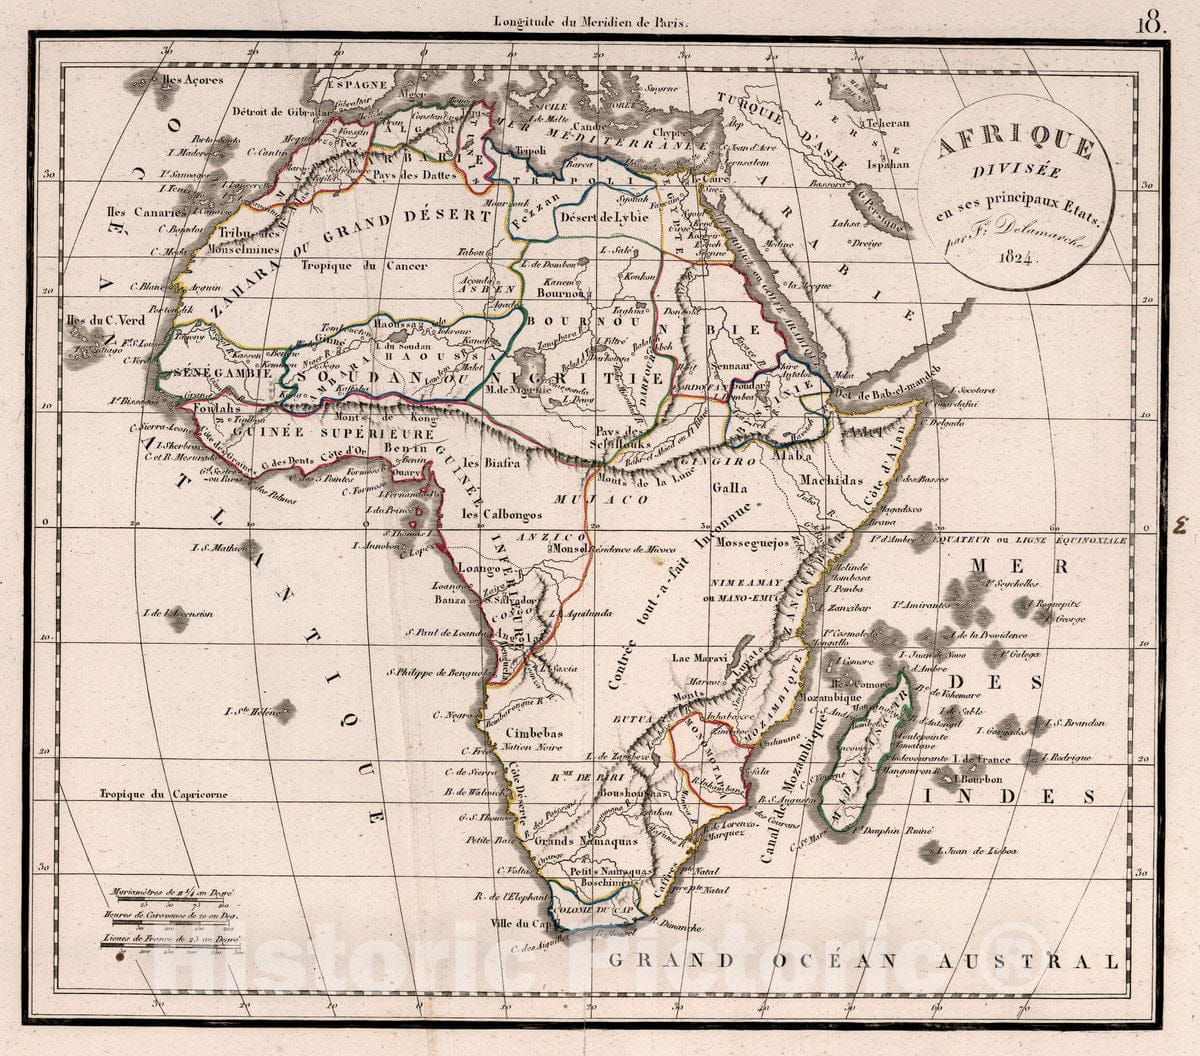 Historic Map : Afrique Divisee en SES principaux Etats 1824, 1824 Atlas - Vintage Wall Art